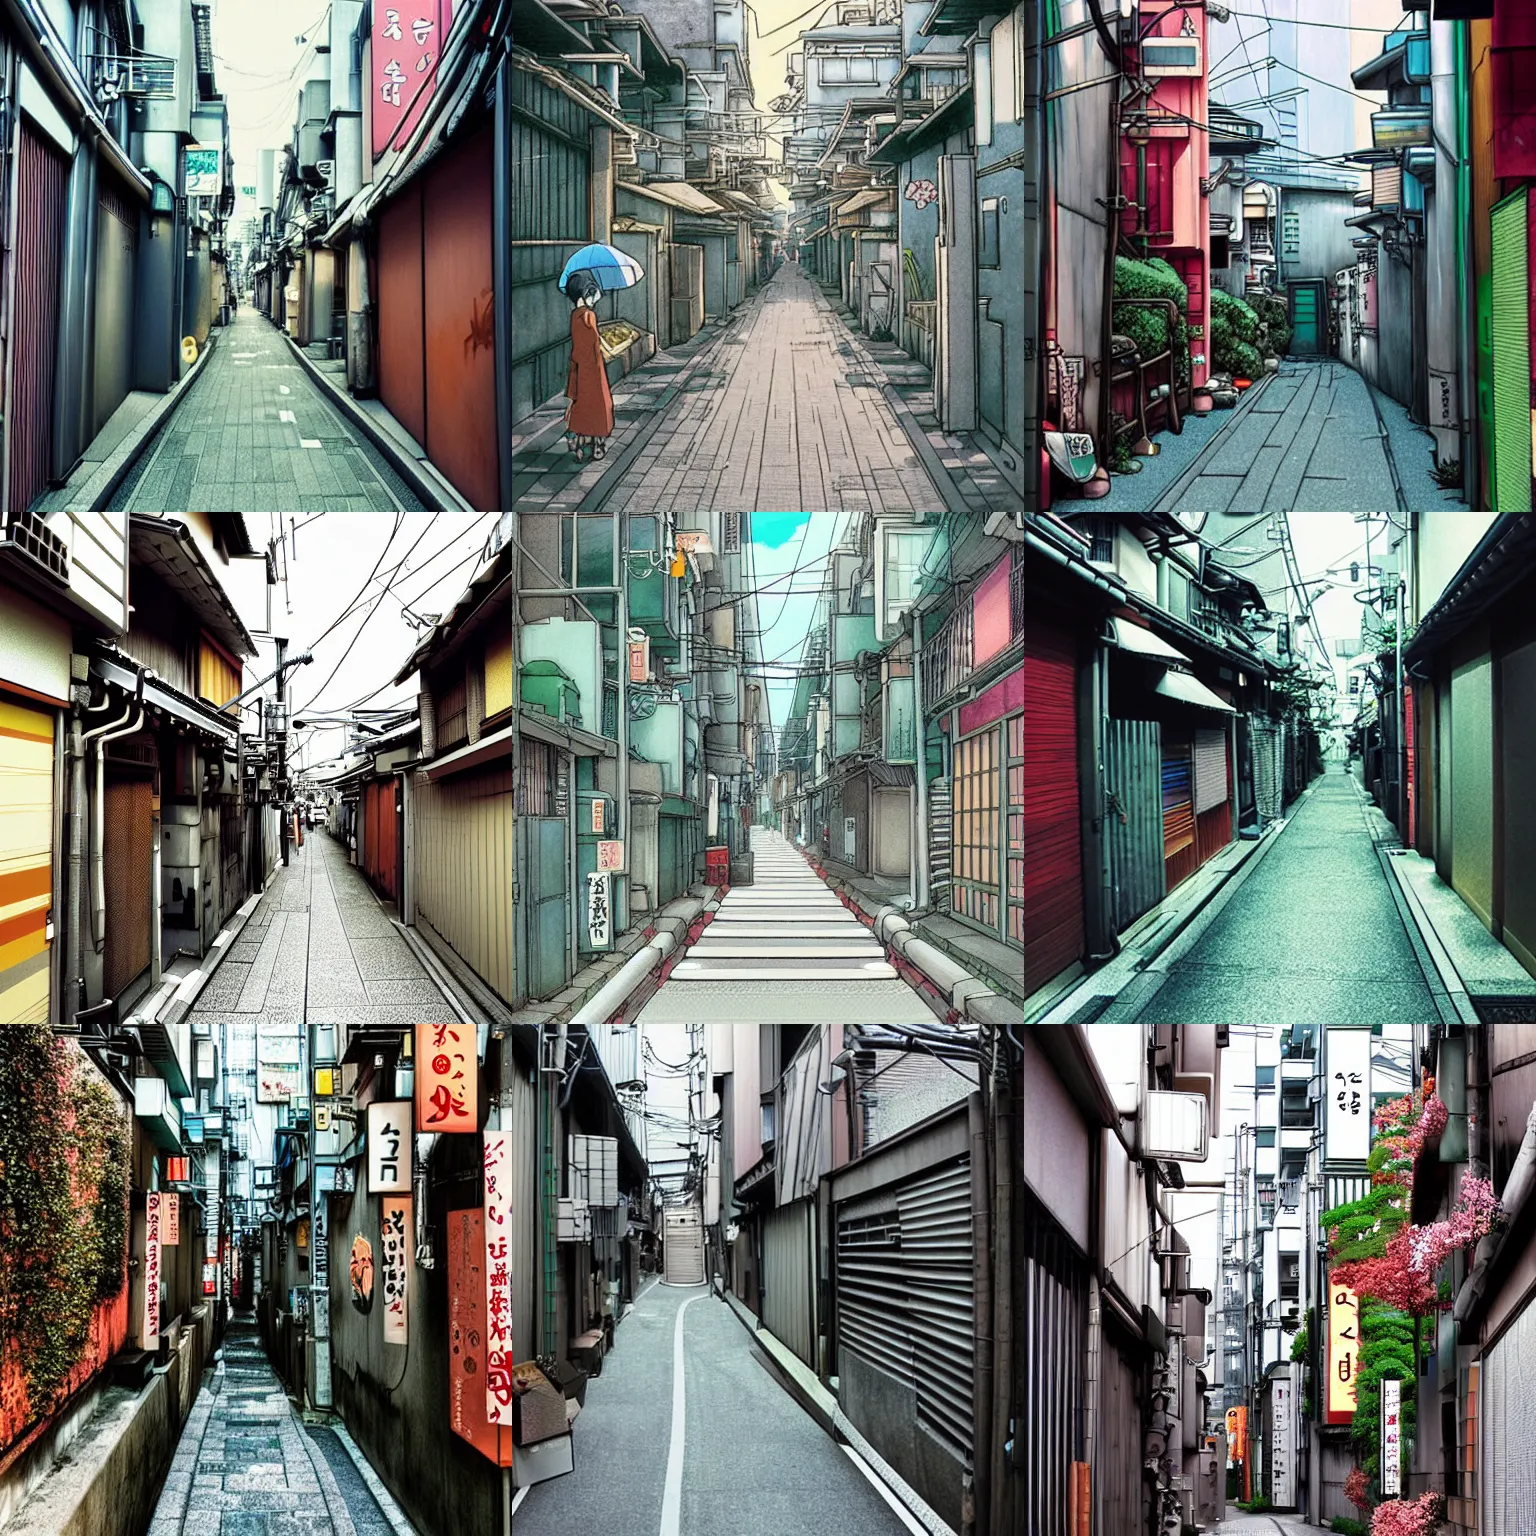 Prompt: tokyo alleyway by studio ghibli, beautiful